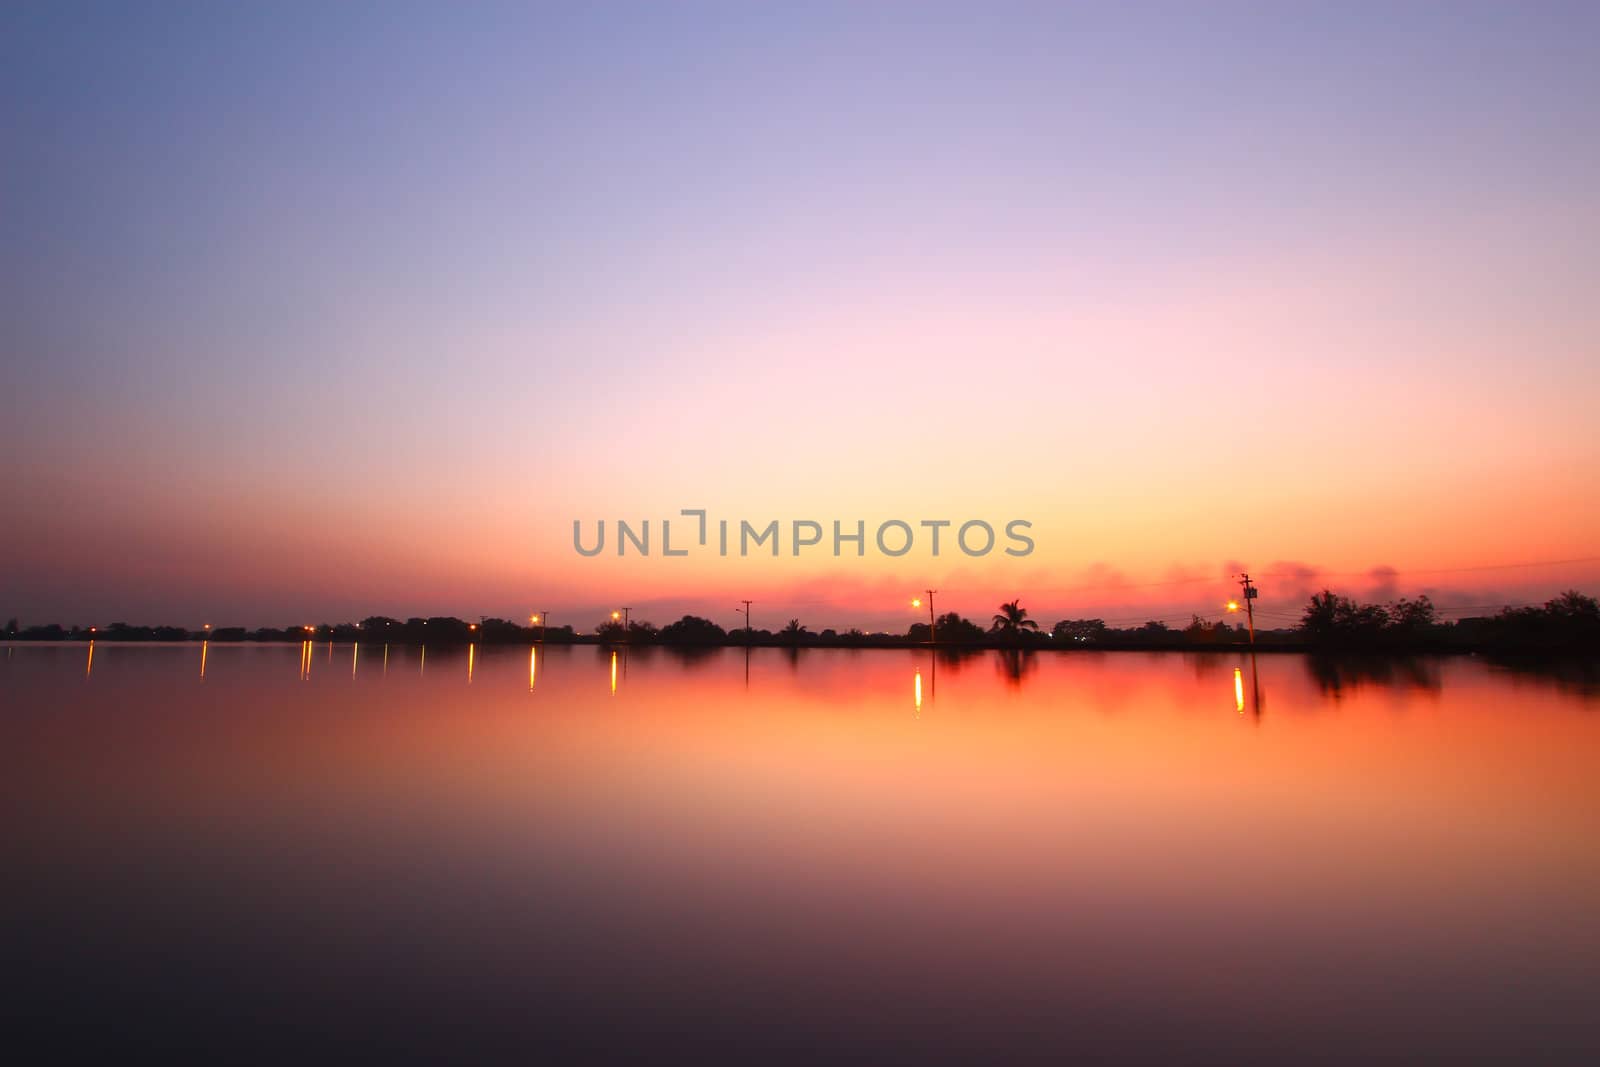 Sunset along the pond by bajita111122